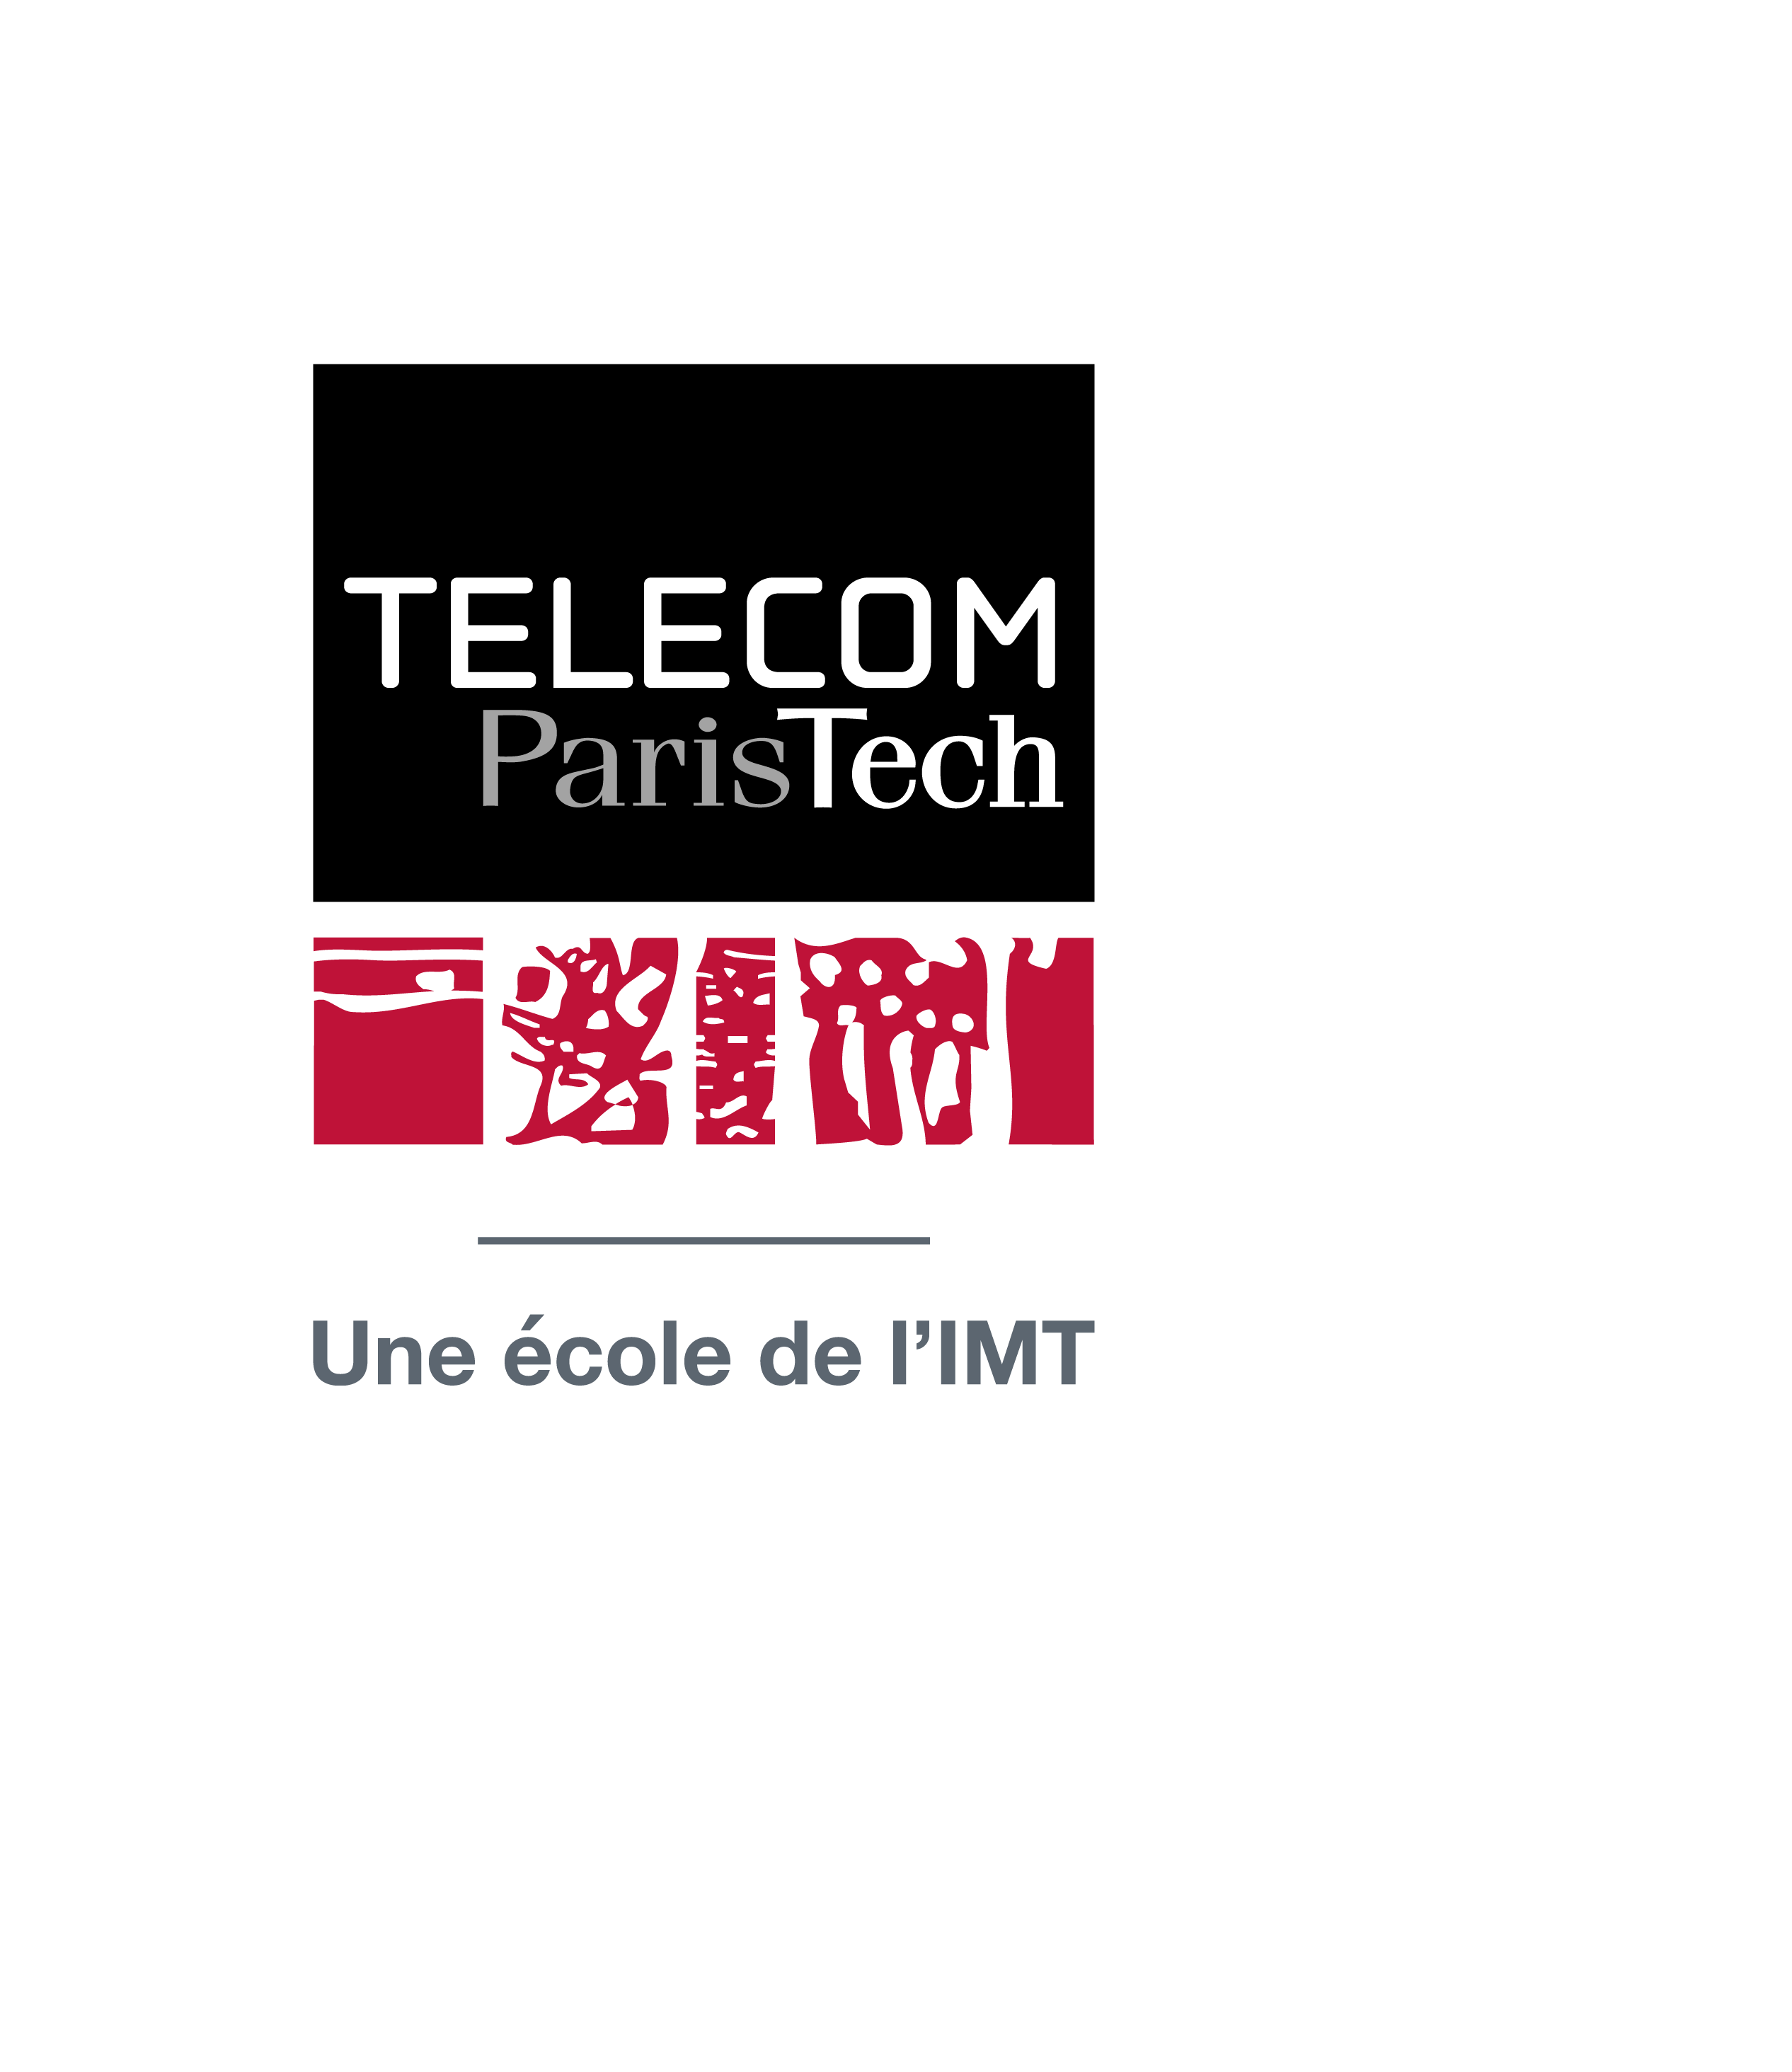 telecom paristech